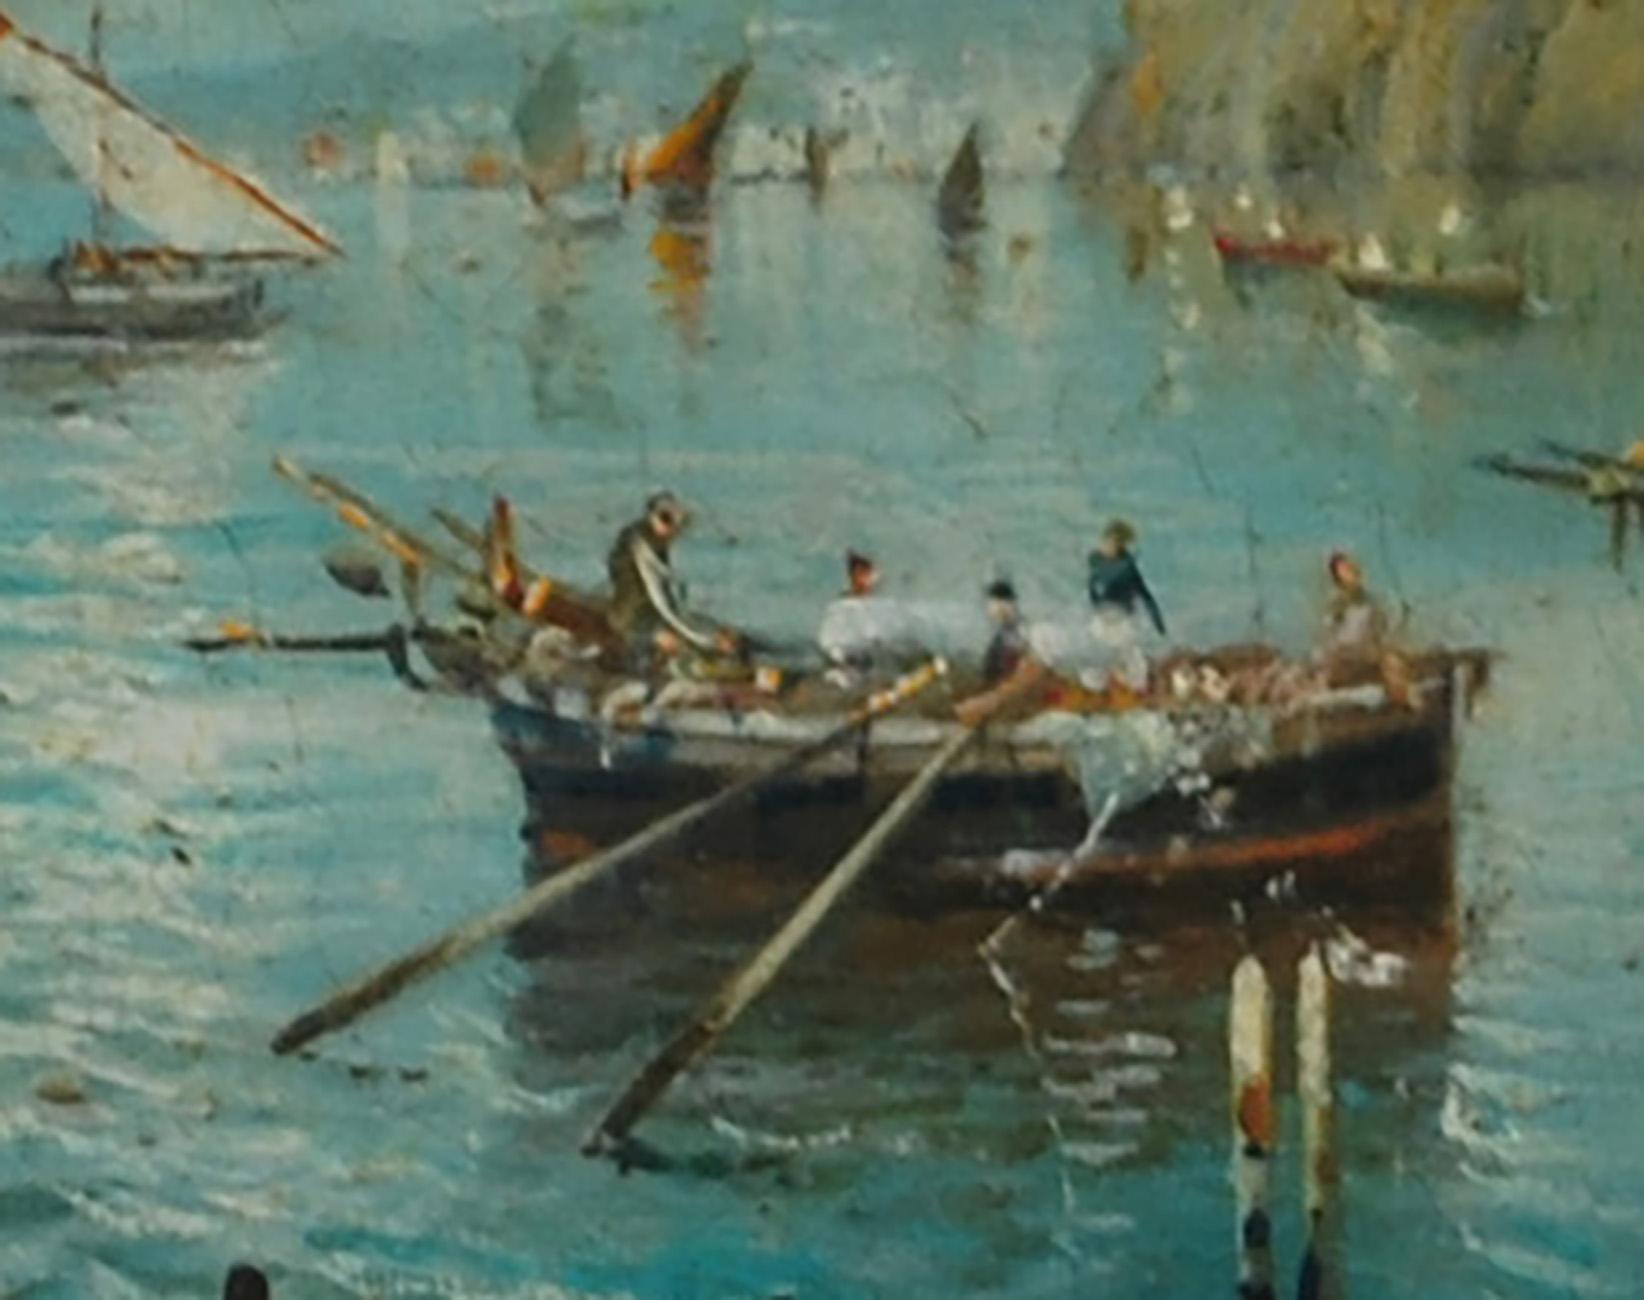 MARINE - Luigi Basile Italian landscape oil on board painting 2